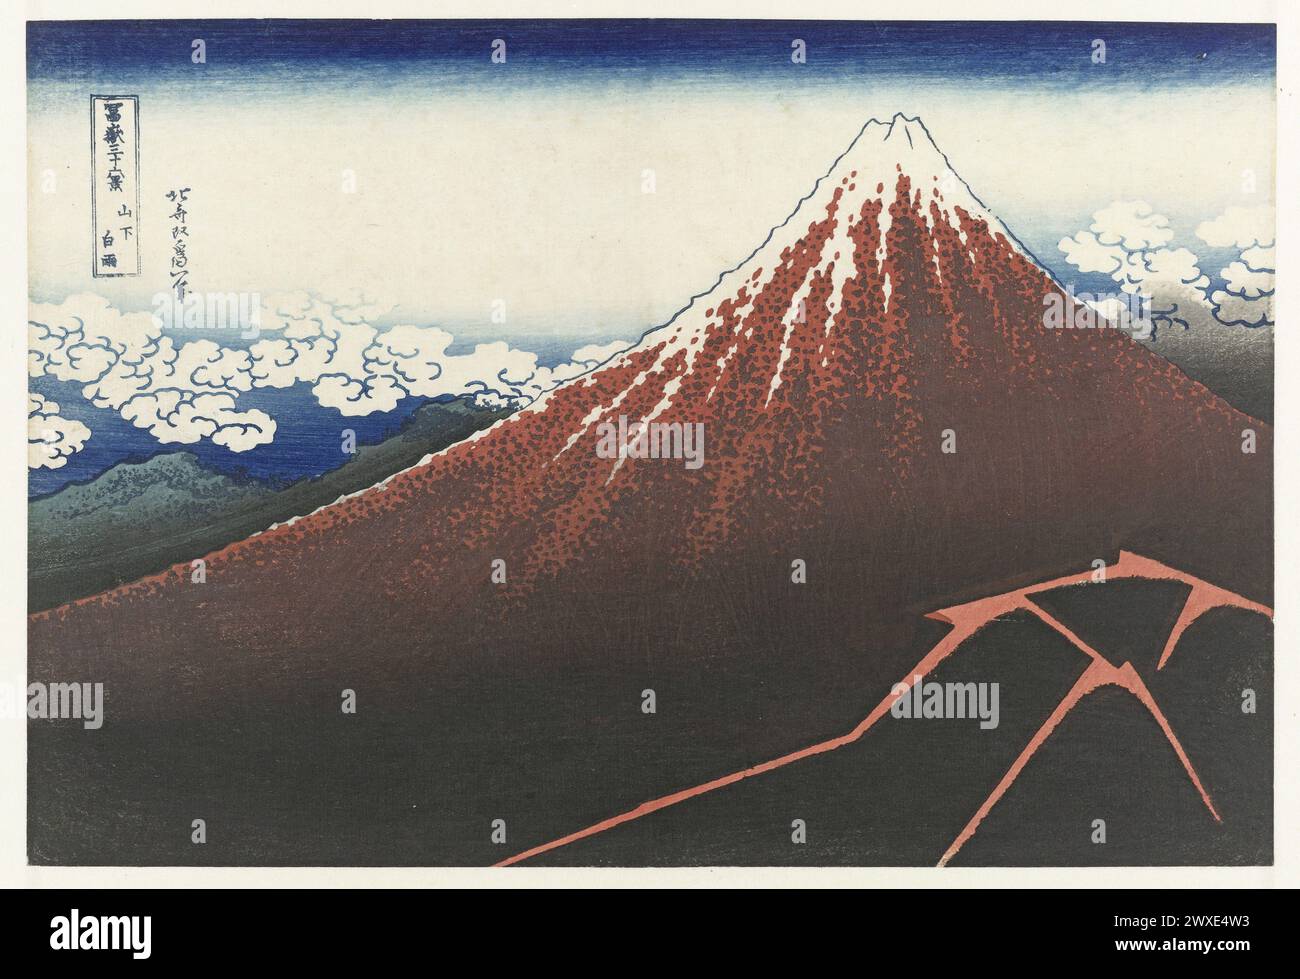 Douche sous le sommet (Sanka hakuu), de la série trente-six vues du mont Fuji (Fugaku sanjurokkei). Imprimé japonais gravé sur bois. Katsushika Hokusai, Japon, 1829 - 1833 Banque D'Images